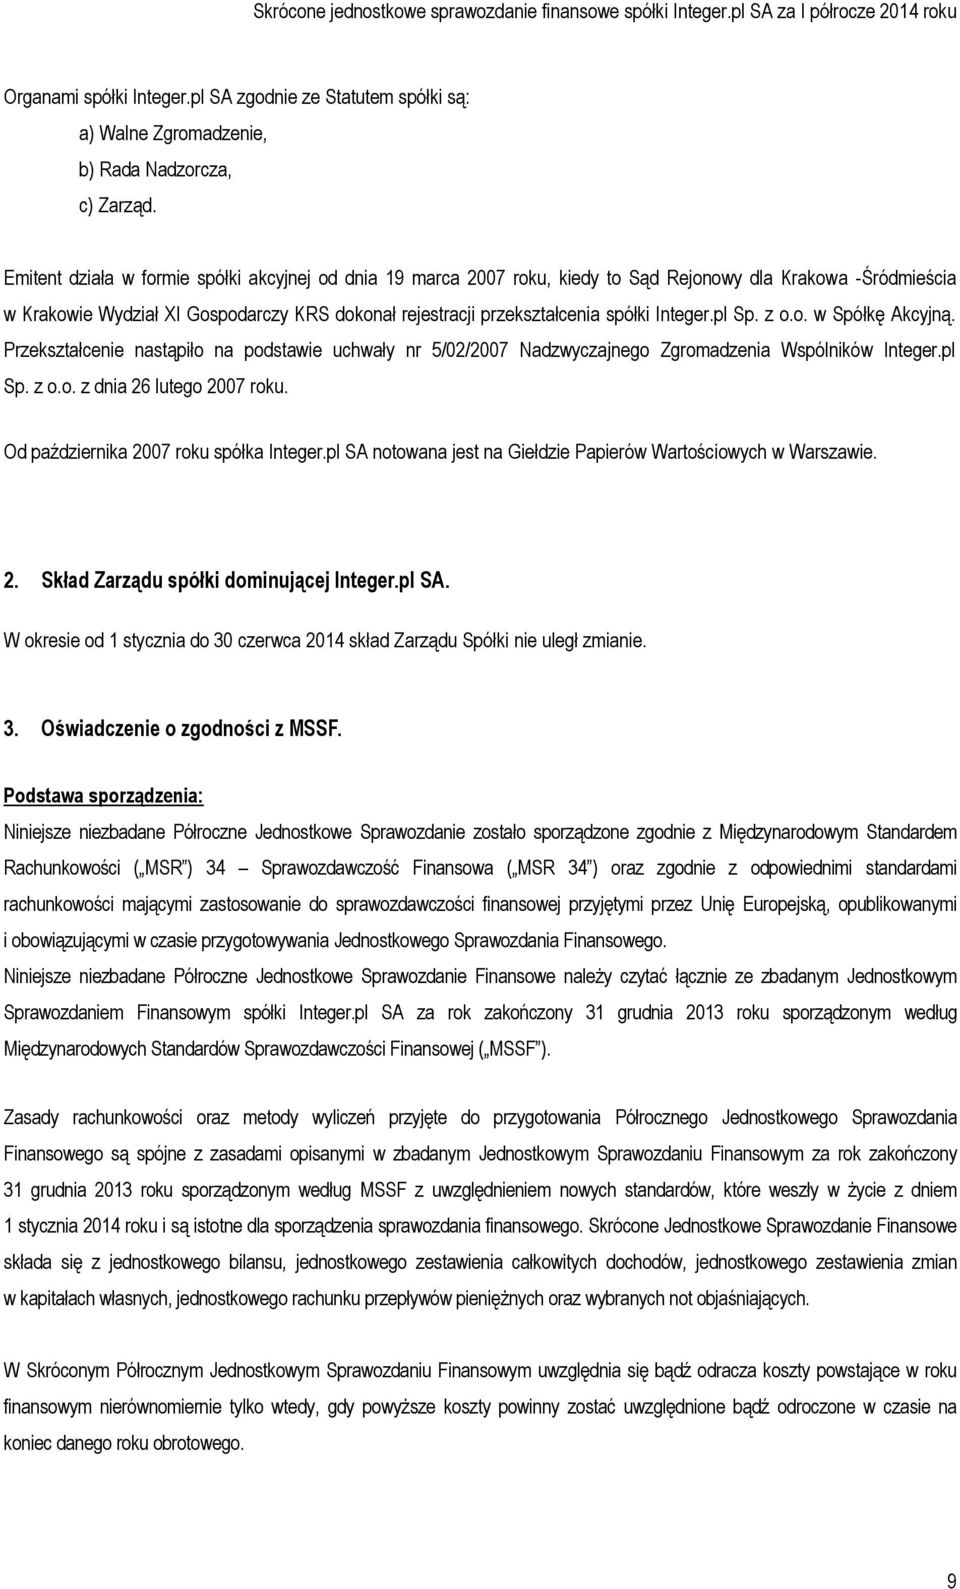 Integer.pl Sp. z o.o. w Spółkę Akcyjną. Przekształcenie nastąpiło na podstawie uchwały nr 5/02/2007 Nadzwyczajnego Zgromadzenia Wspólników Integer.pl Sp. z o.o. z dnia 26 lutego 2007 roku.